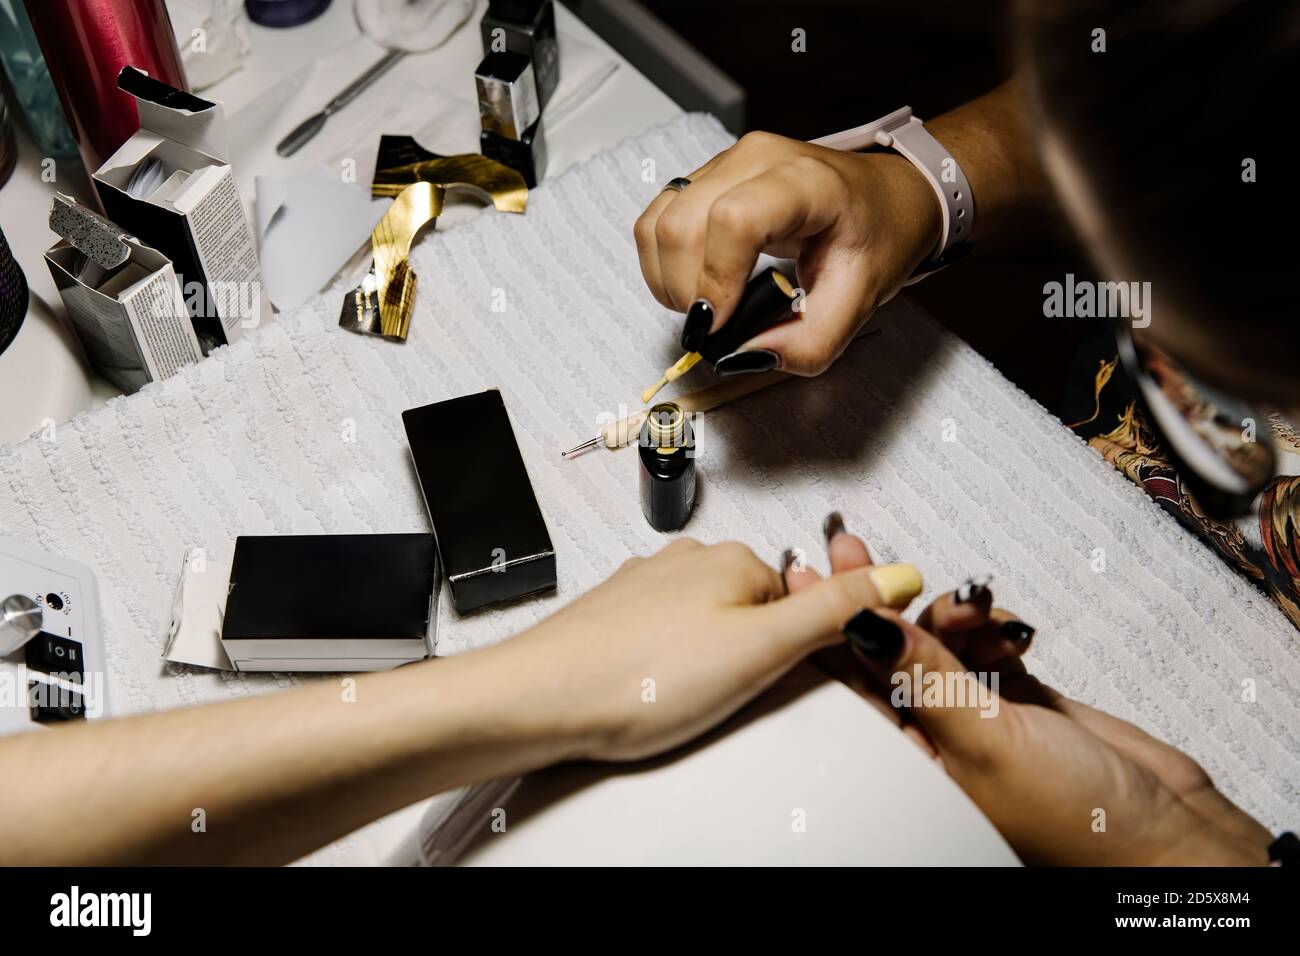 Artiste anonyme d'ongles appliquant vernis à ongles tout en faisant la manucure à client Banque D'Images